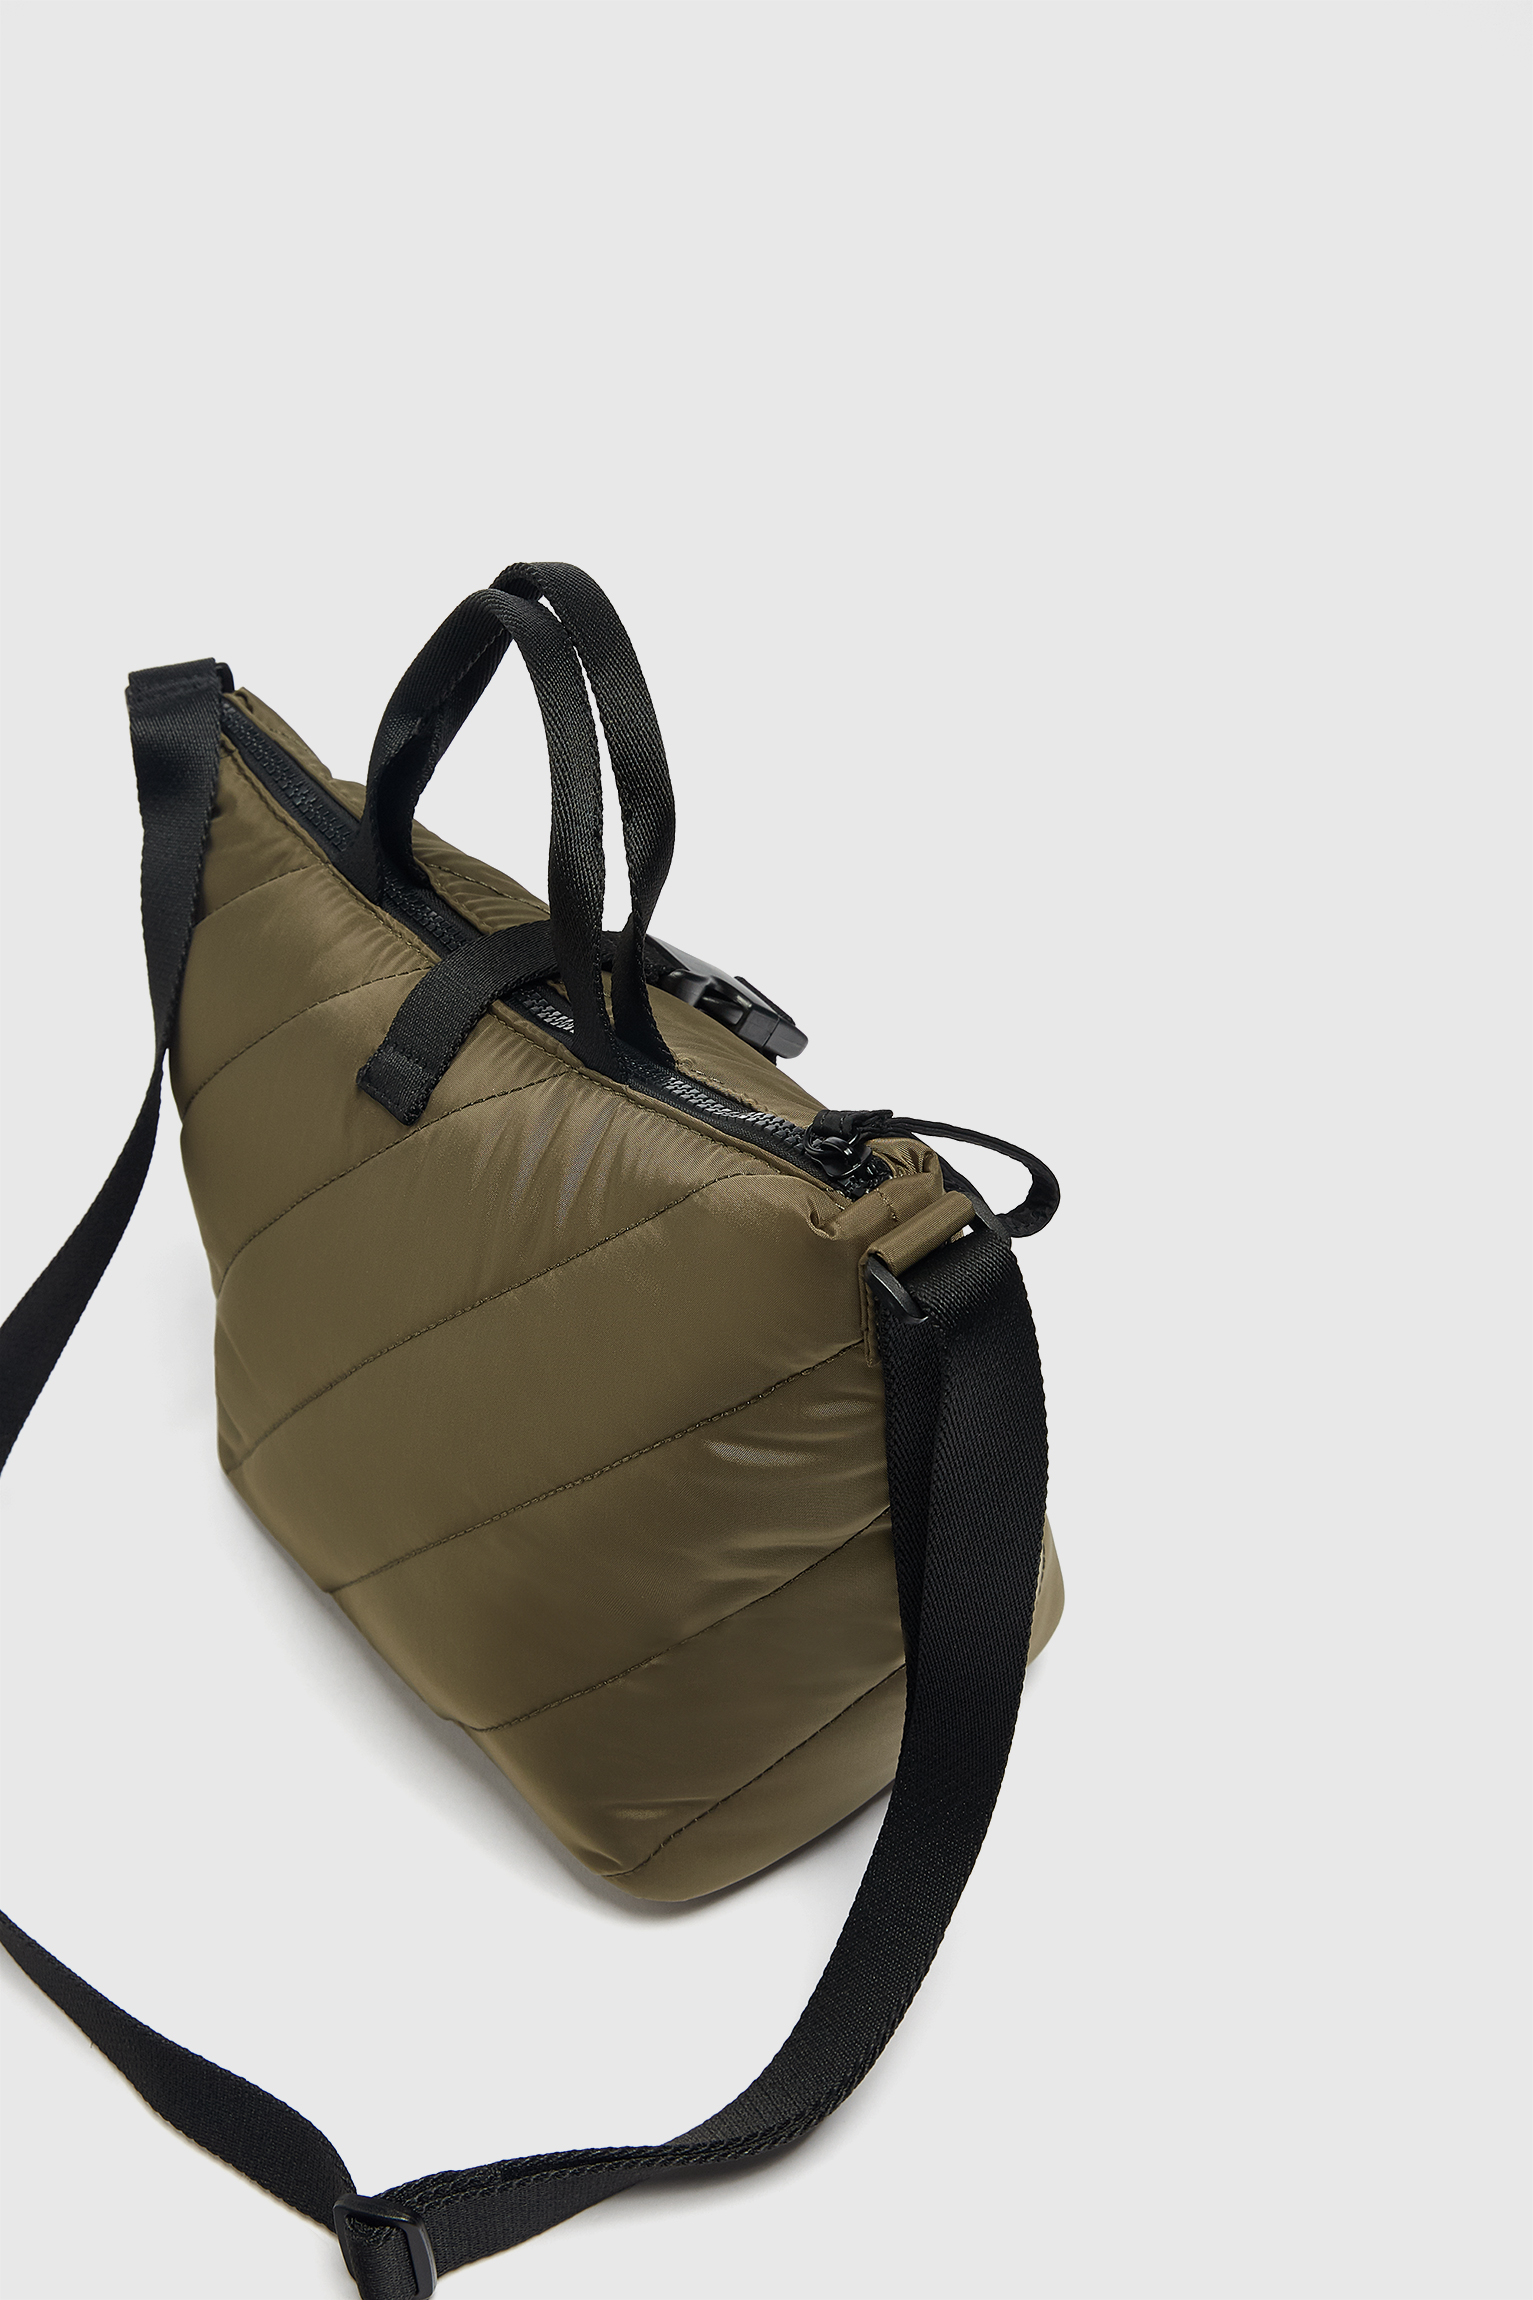 La lunch bag de Pull&Bear que no puedes dejar perder este Black Friday: el bolso-nevera perfecto para la oficina